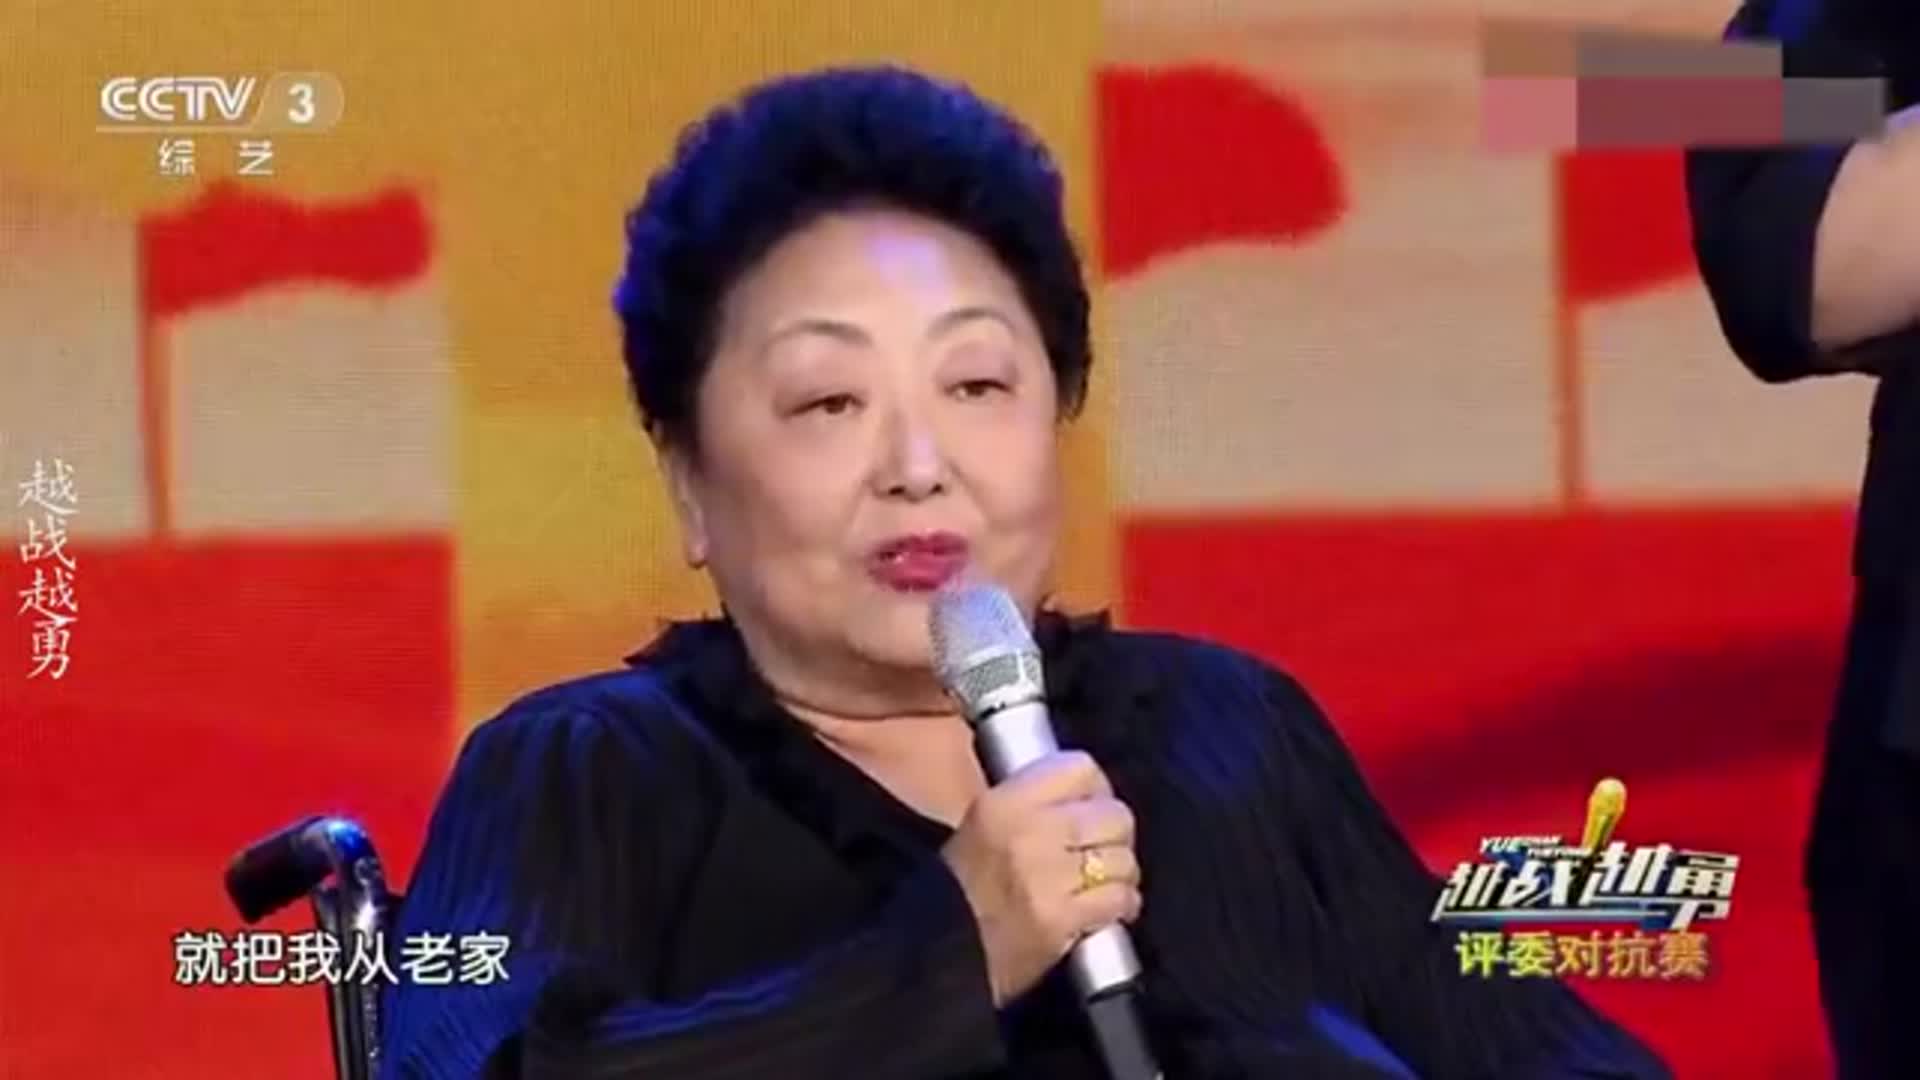 衡越在北京给妈妈买了房，妈妈：房子没写我的名！衡越谈家人系列